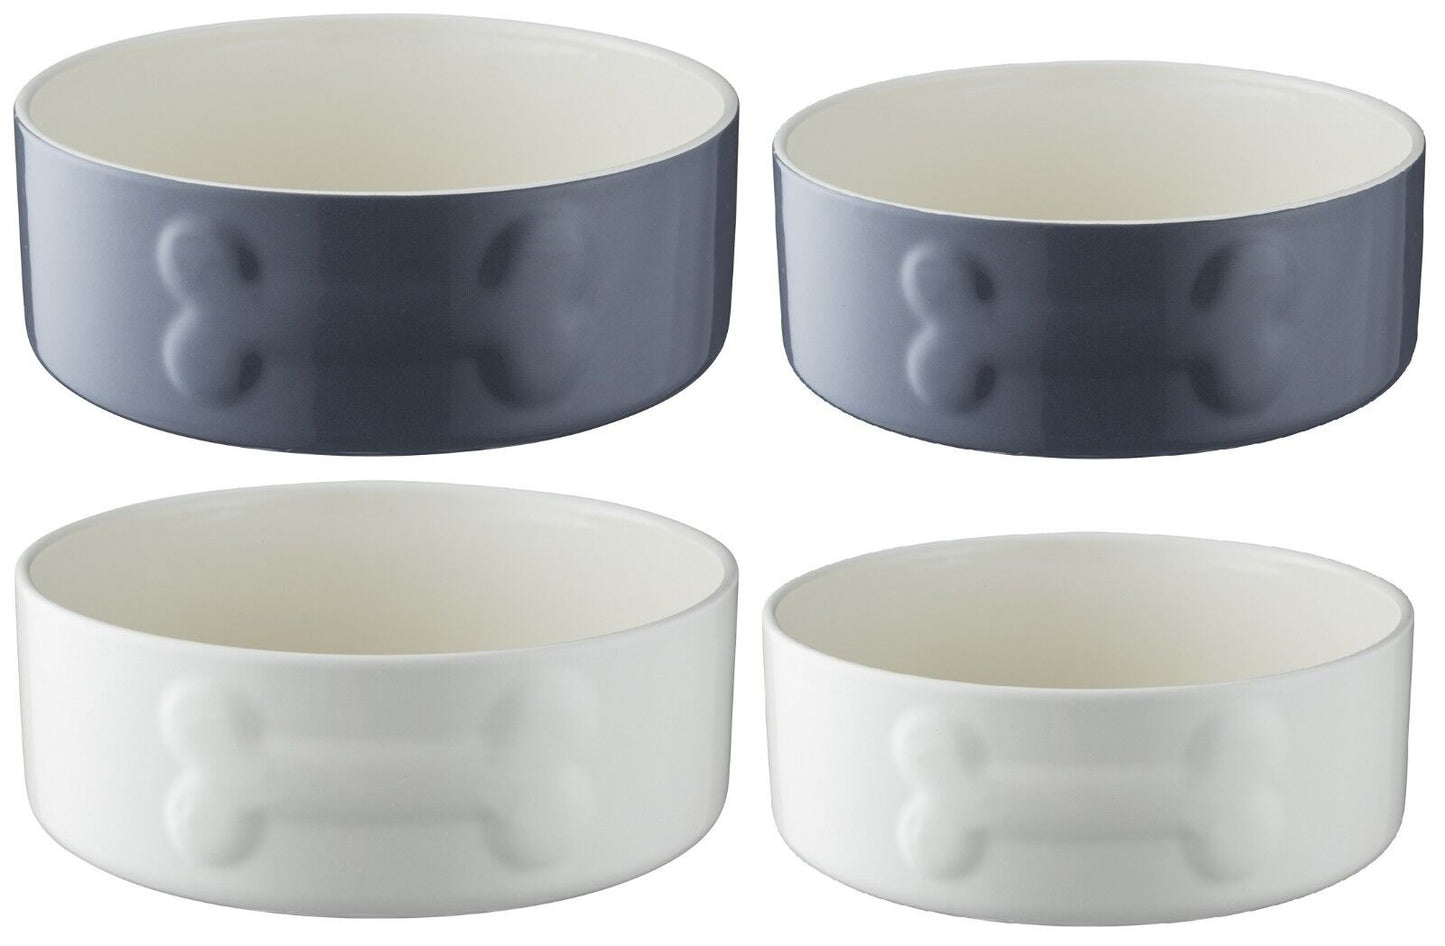 Mason Cash Quality Heavy Duty Stoneware Pet Bowls in Grey {15cm}